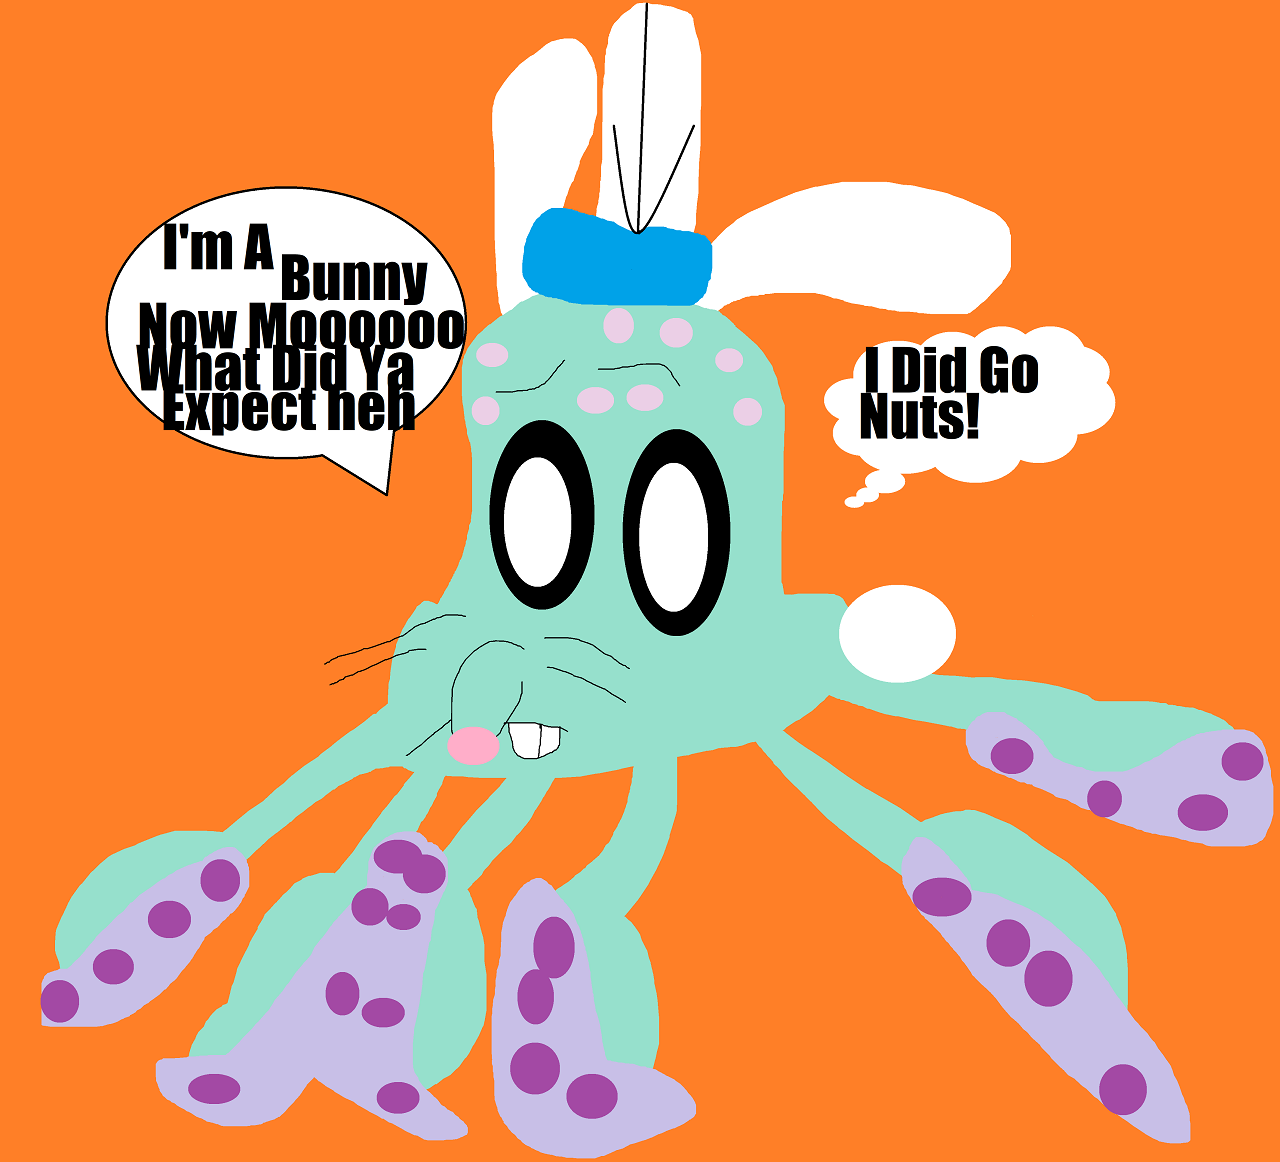 Sea Bunny Octopus Goes Moooooo by Falconlobo